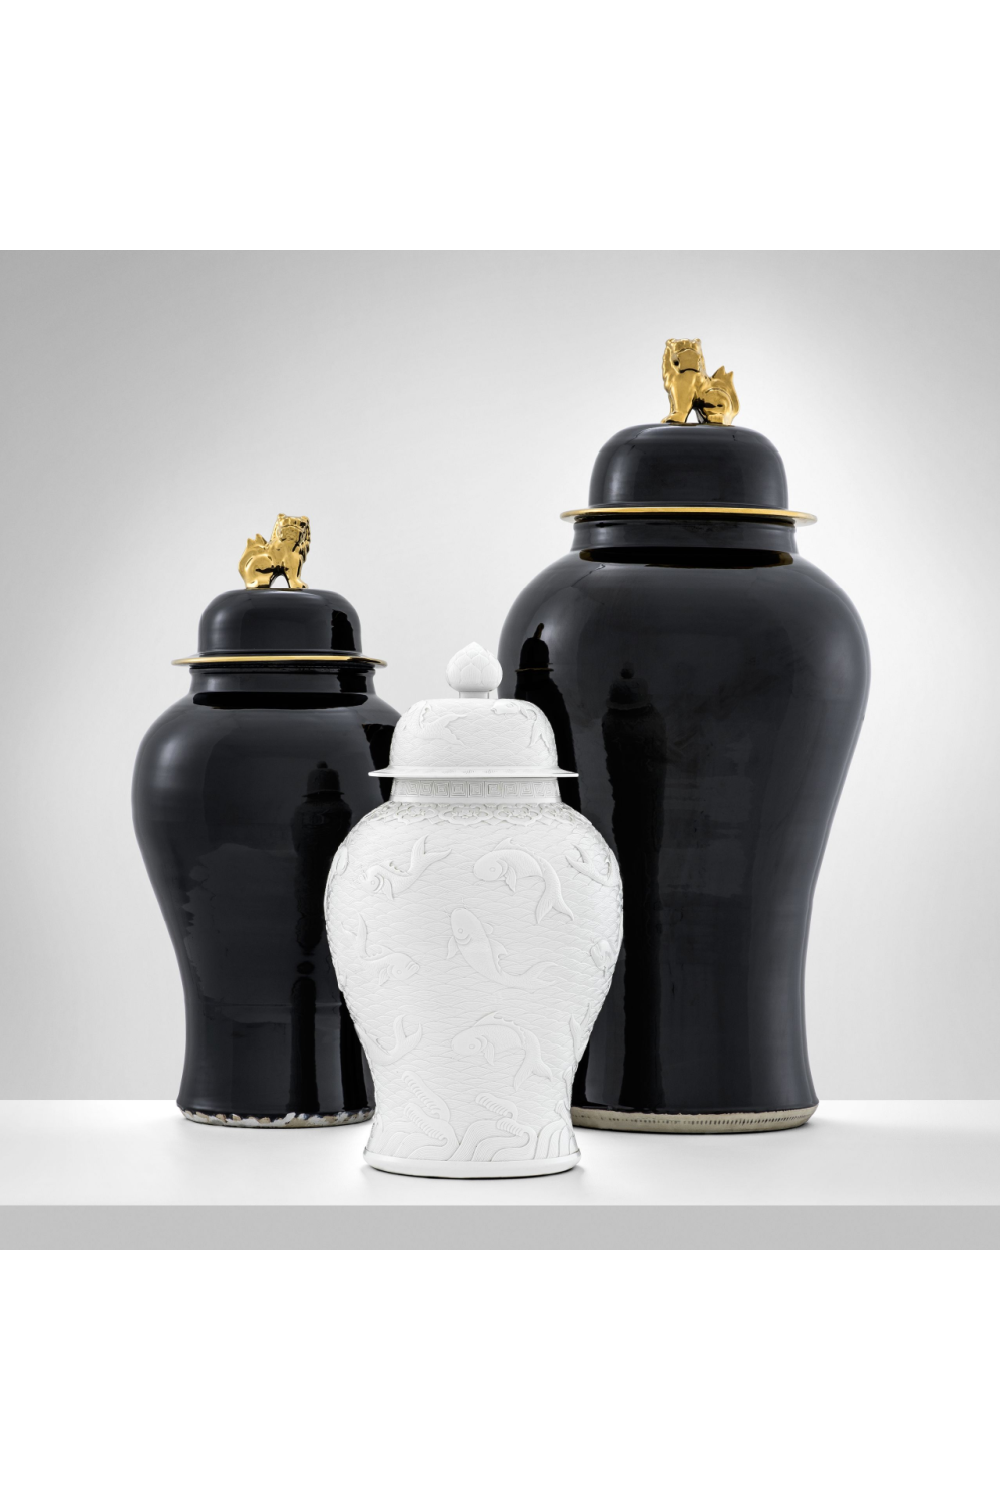 Golden Dragon Vase - S | Eichholtz | OROA